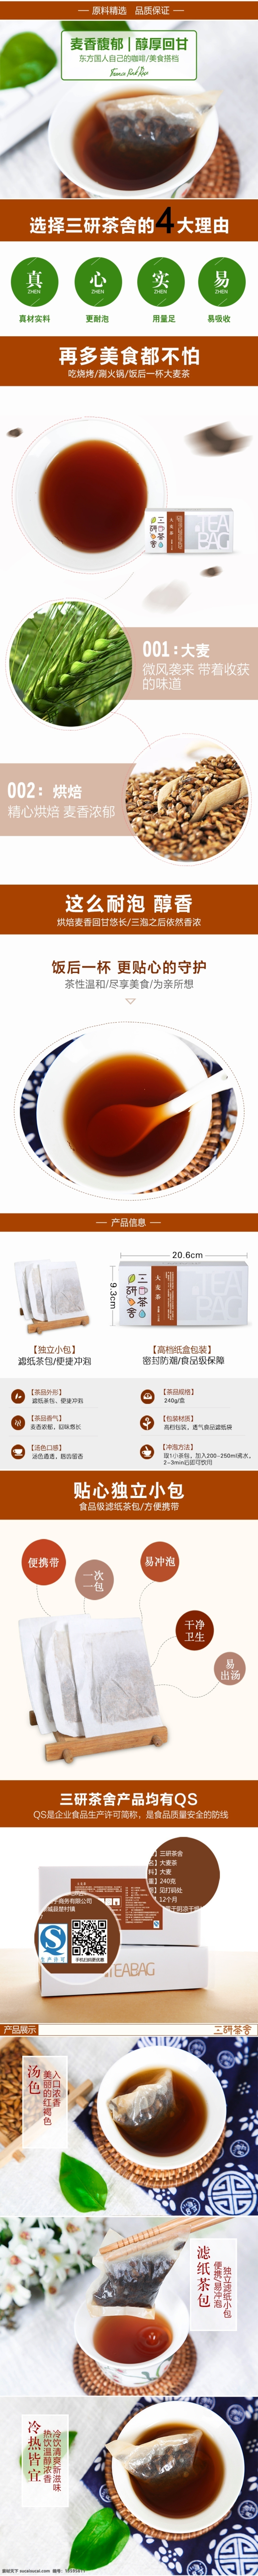 大麦 茶 详情 页 宝贝描述模板 茶品 袋泡茶 耐泡醇香茶 白色